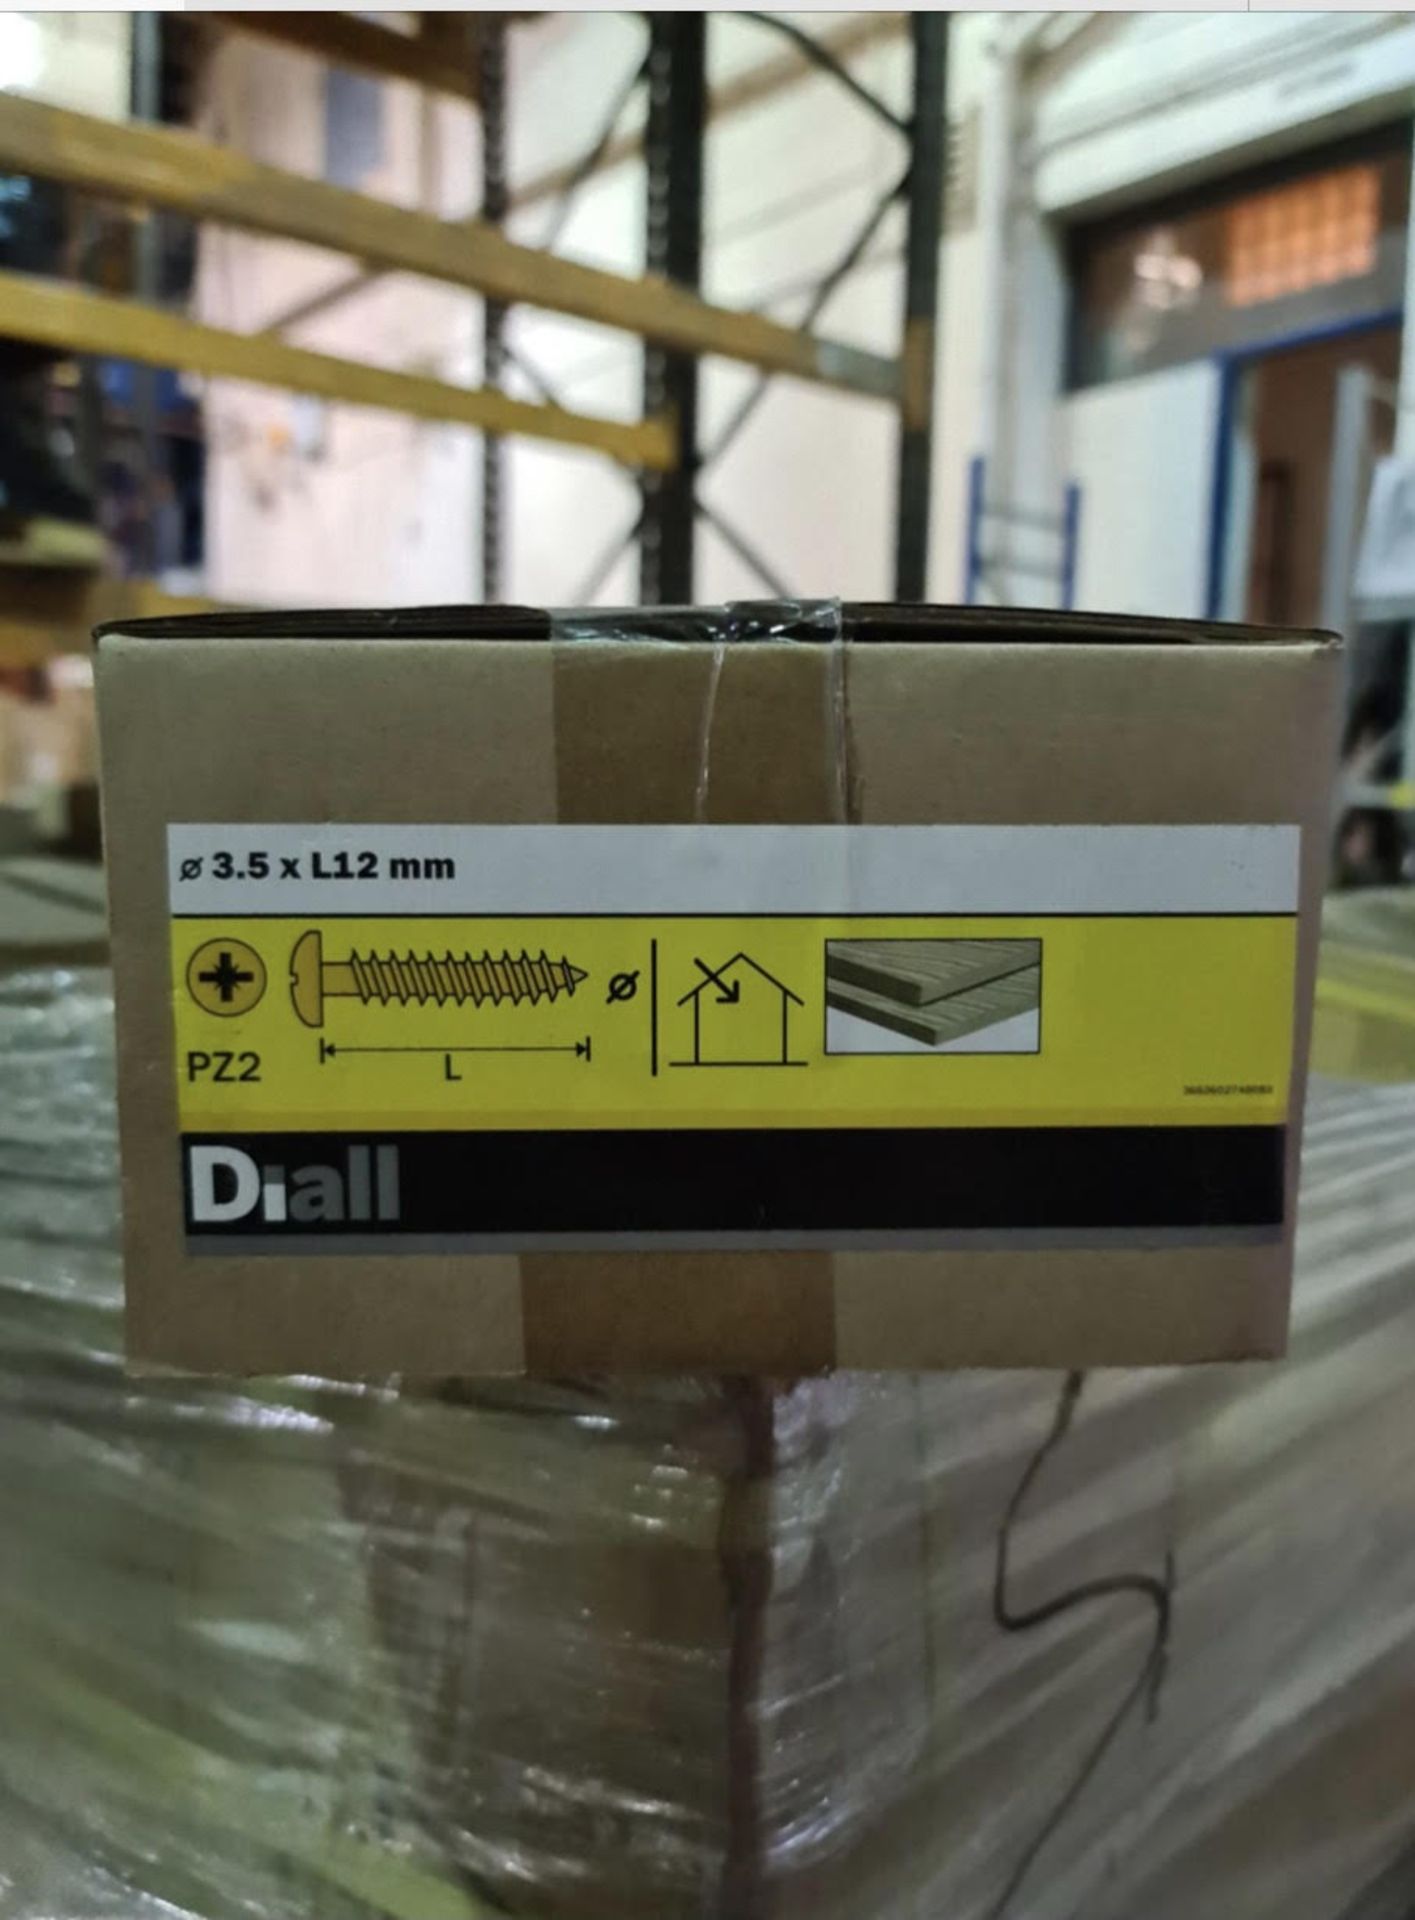 Brand new 4 kg box of diall 3.5 x l12mm pz2 wood screws rrp £23.75